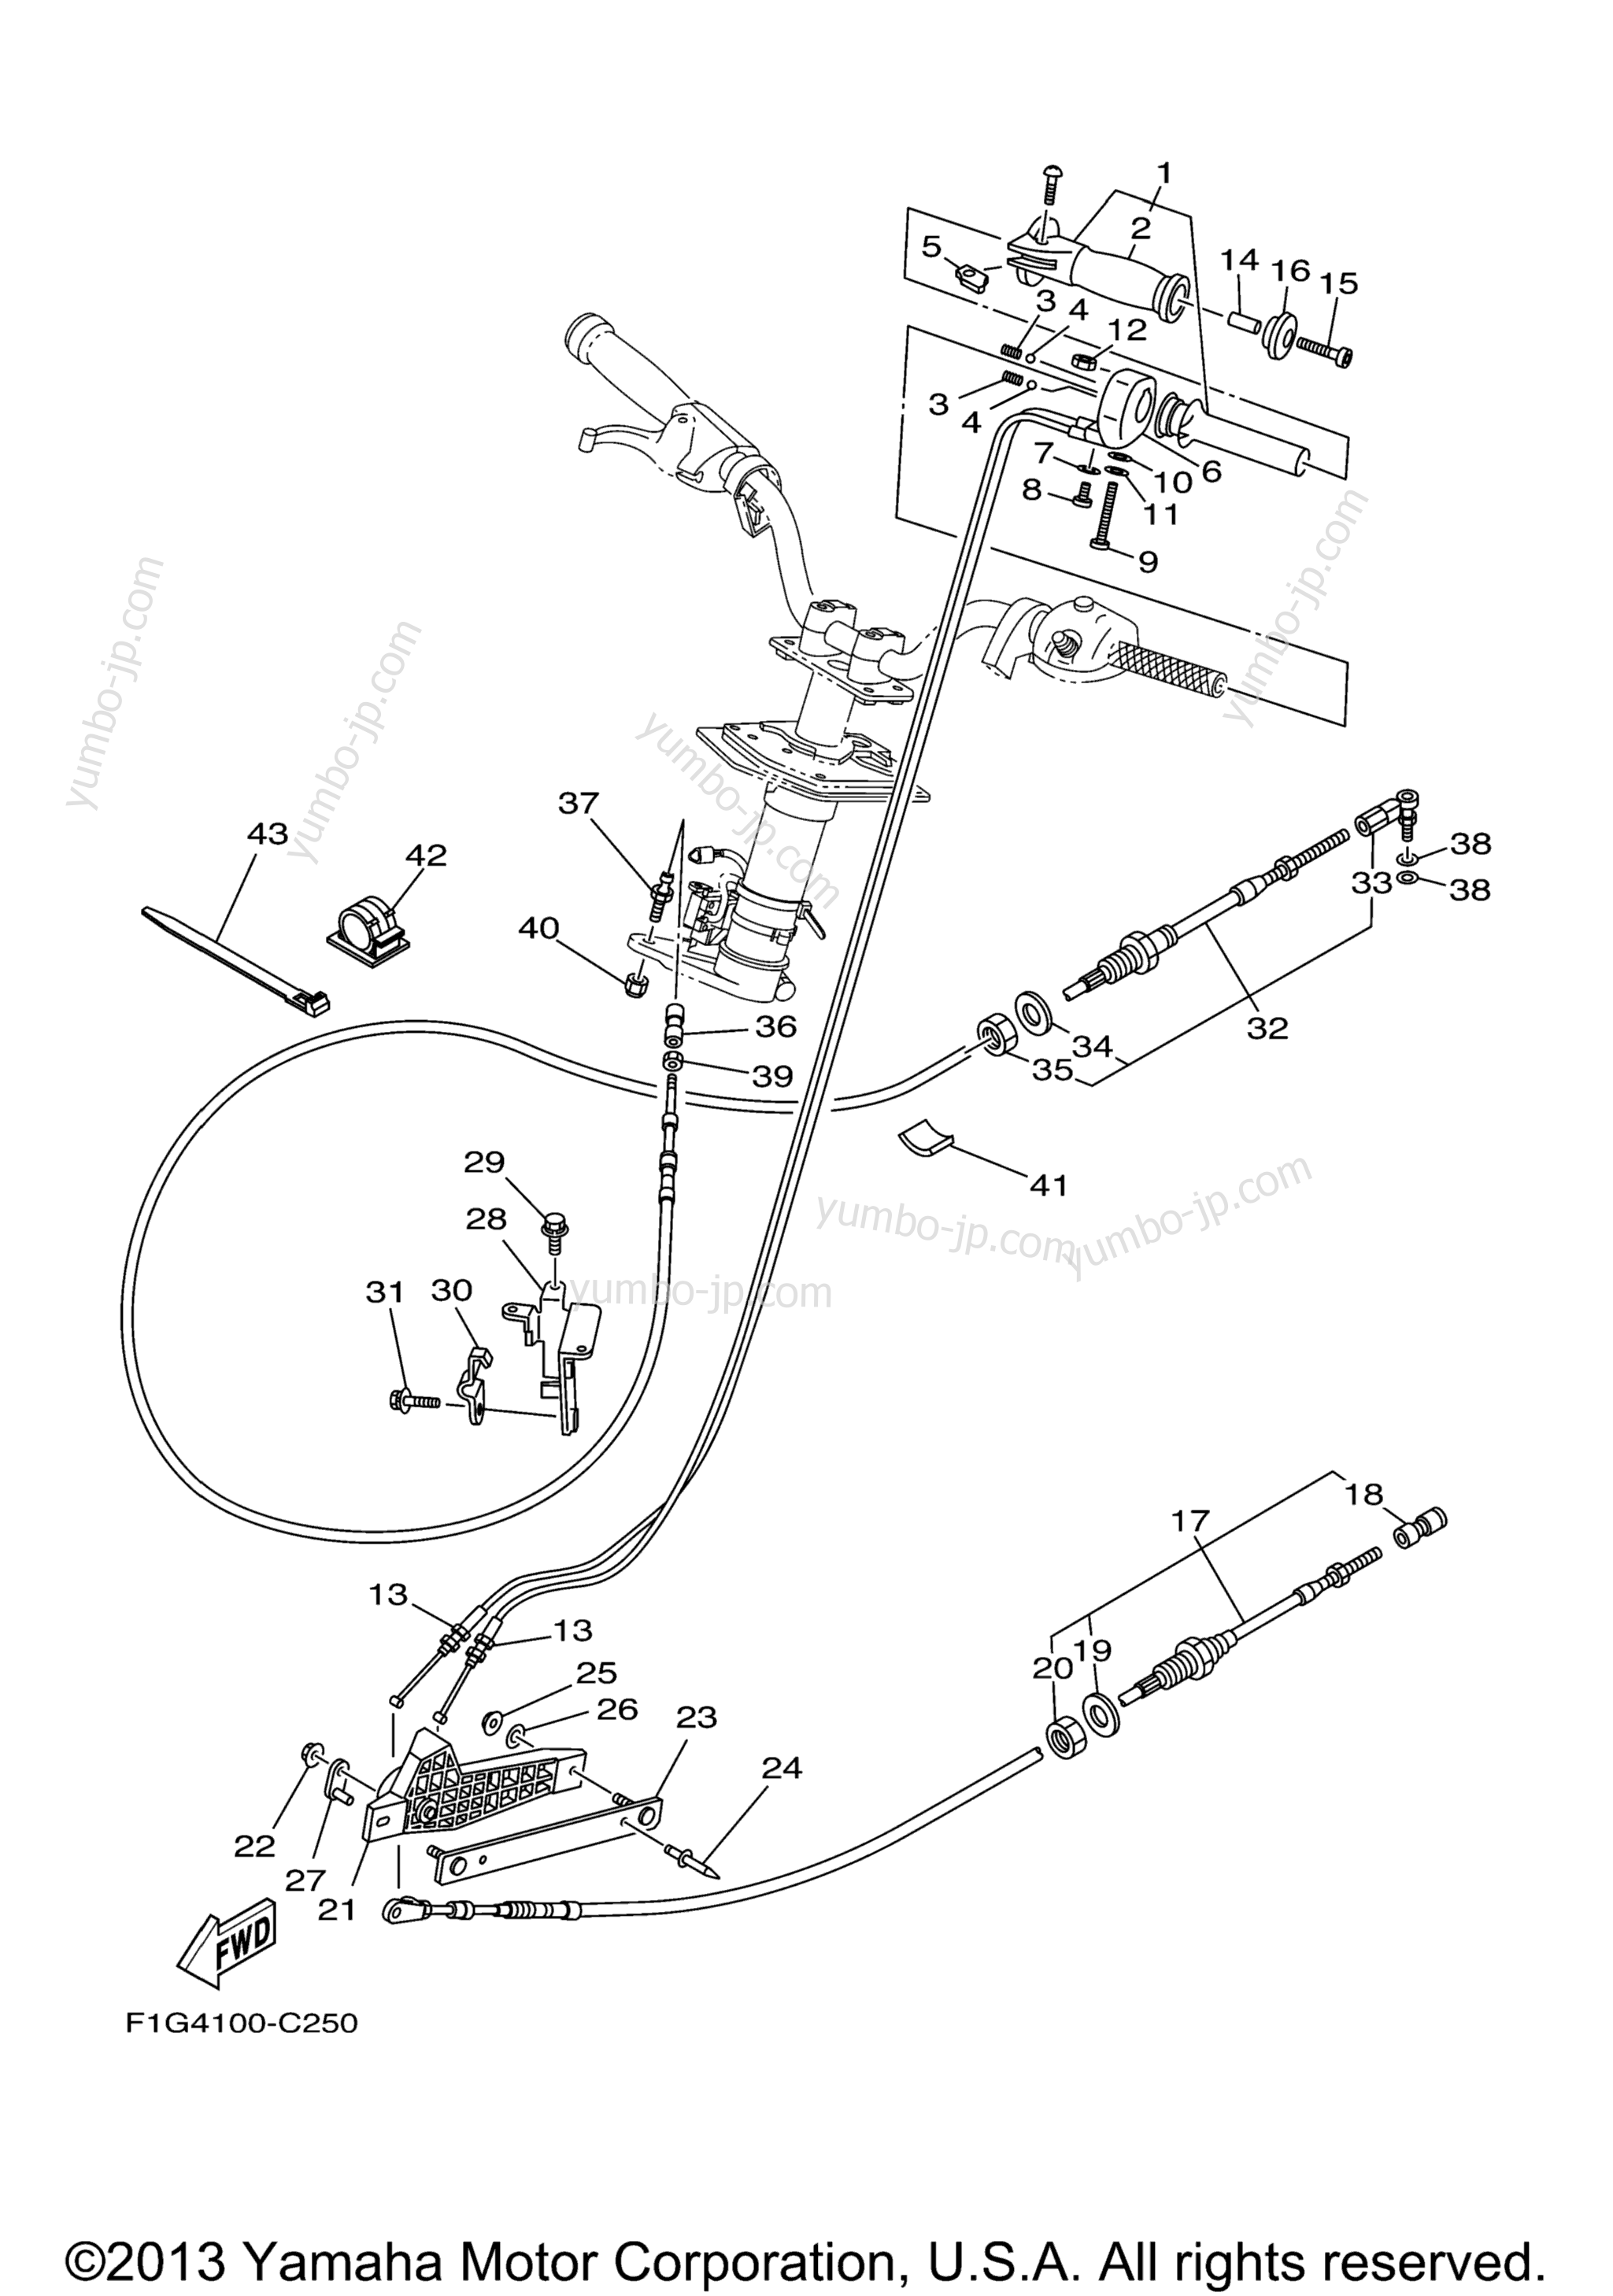 Устройство дистанционного управления / Кабеля для гидроциклов YAMAHA GP1300R (GP1300CC) CA 2004 г.